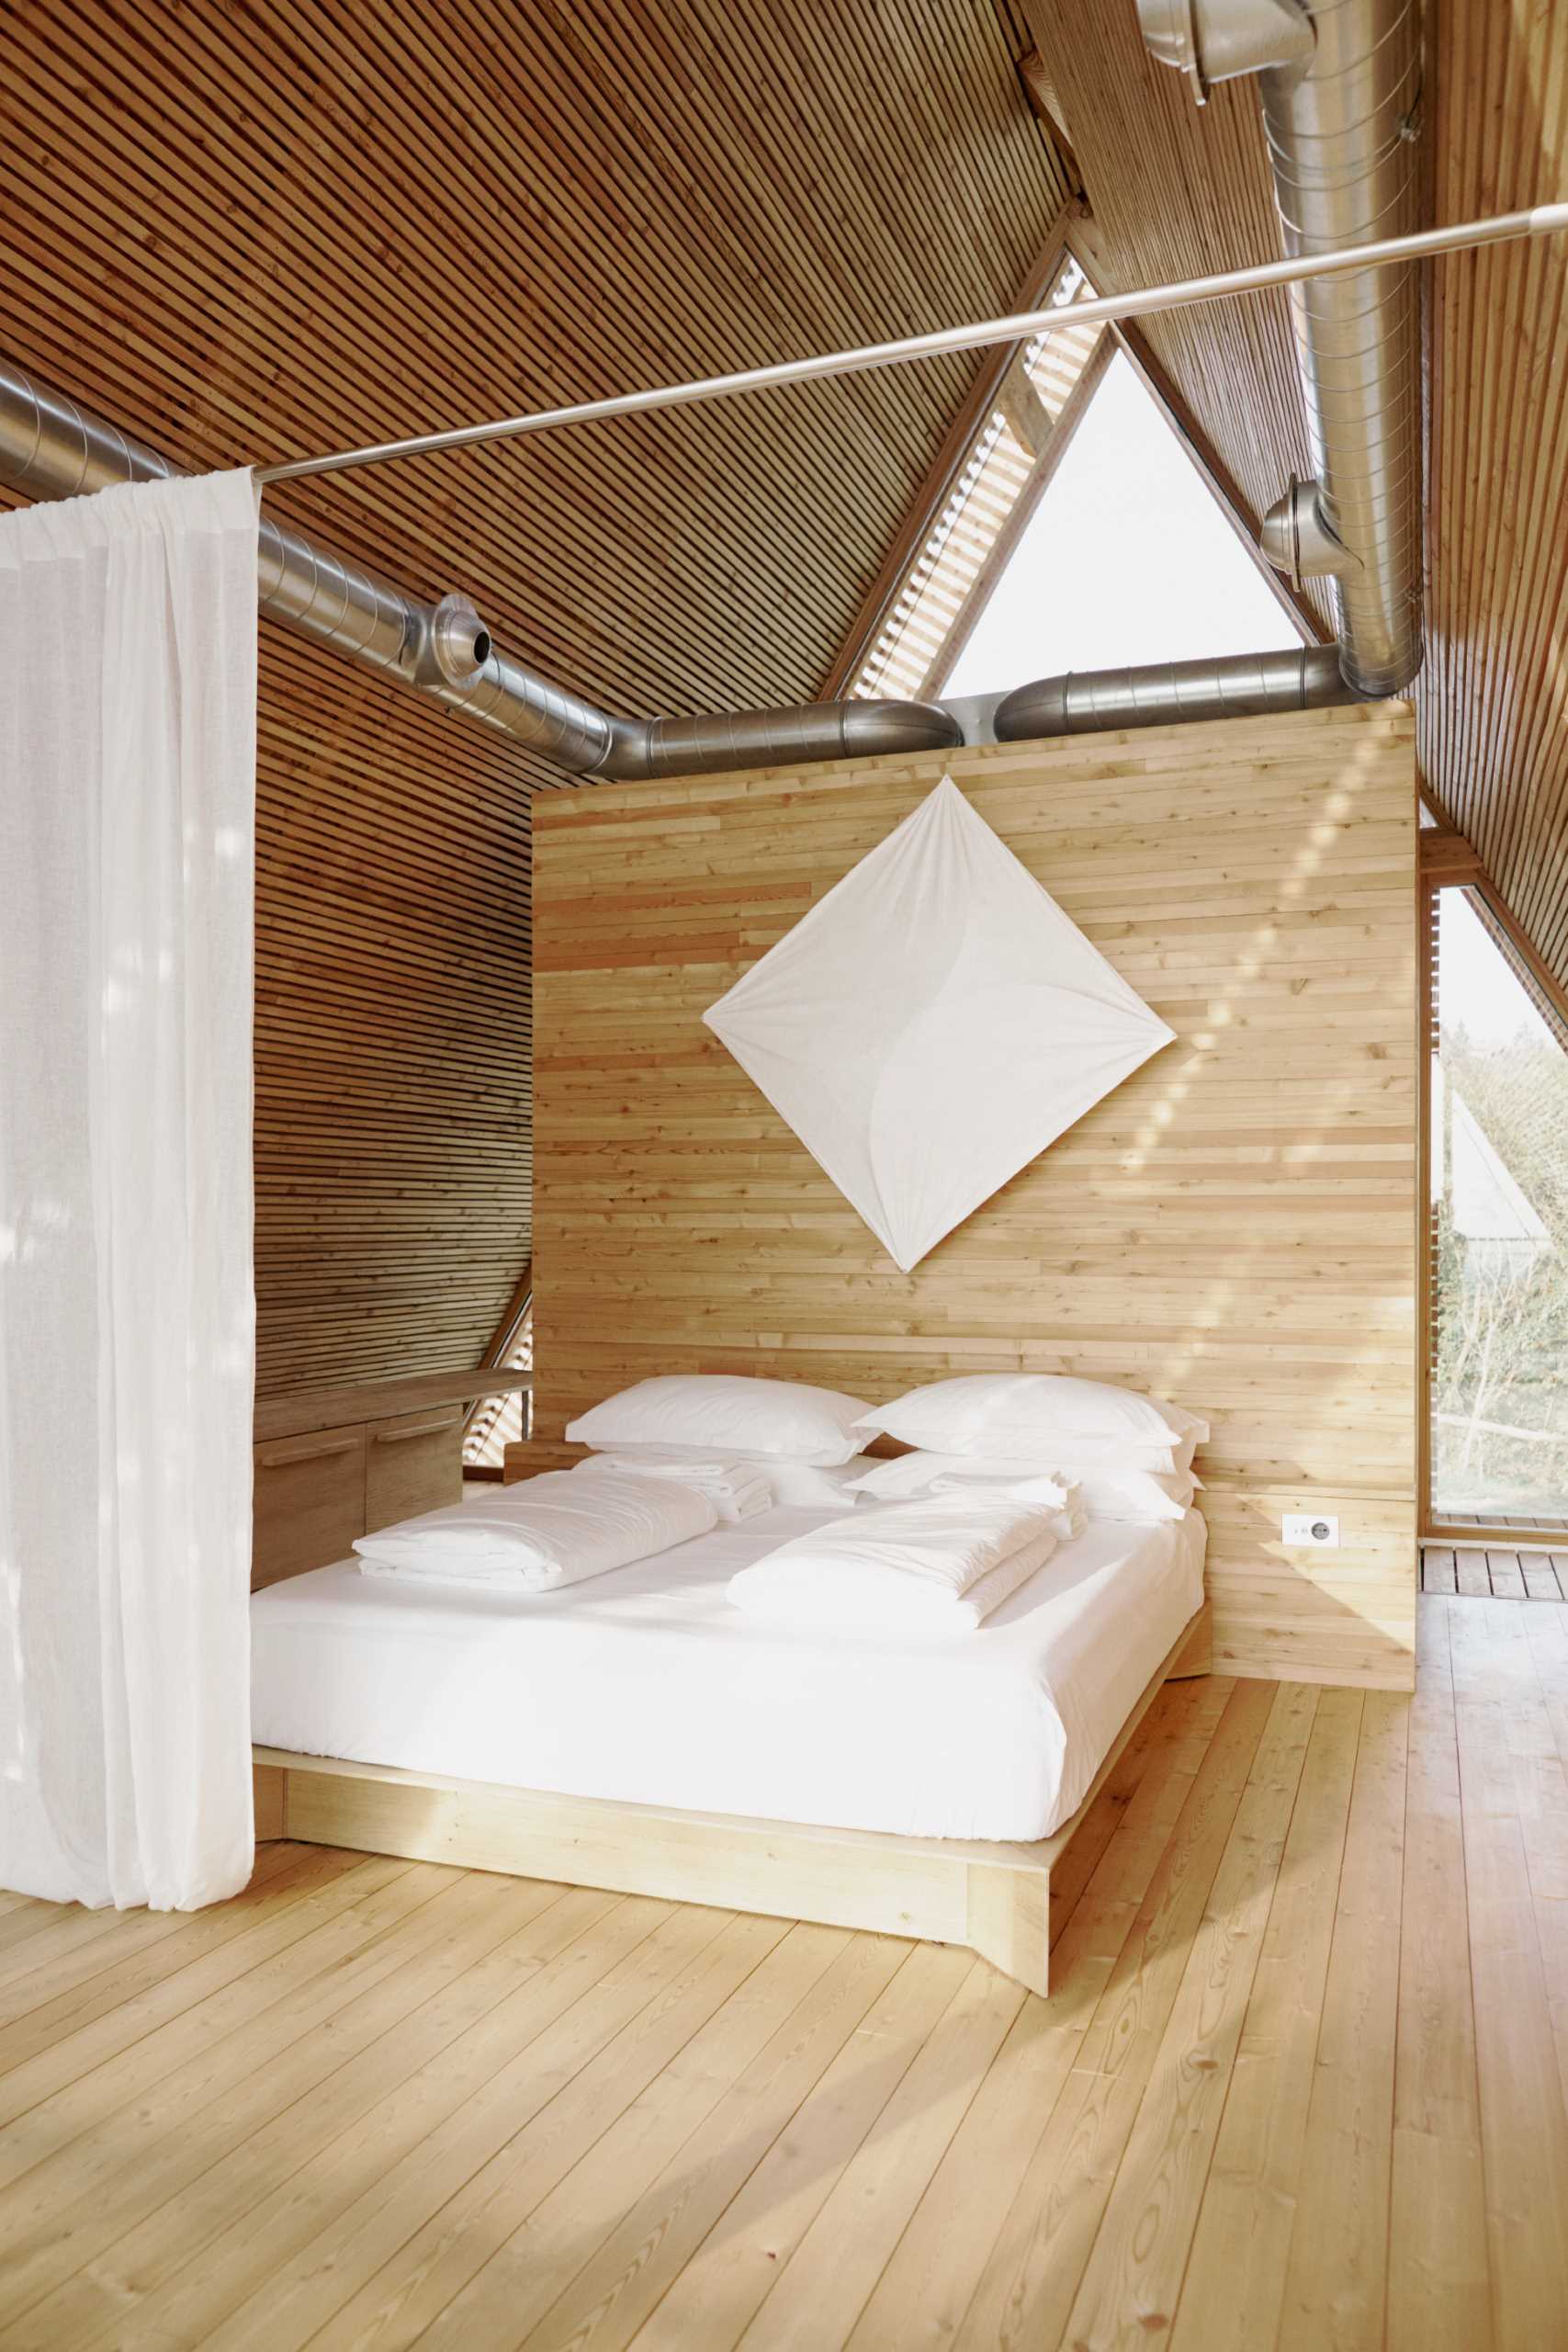 پرده های بلند از سقف آویزان می شوند و در صورت بسته بودن فضای خواب را حفظ می کنند.